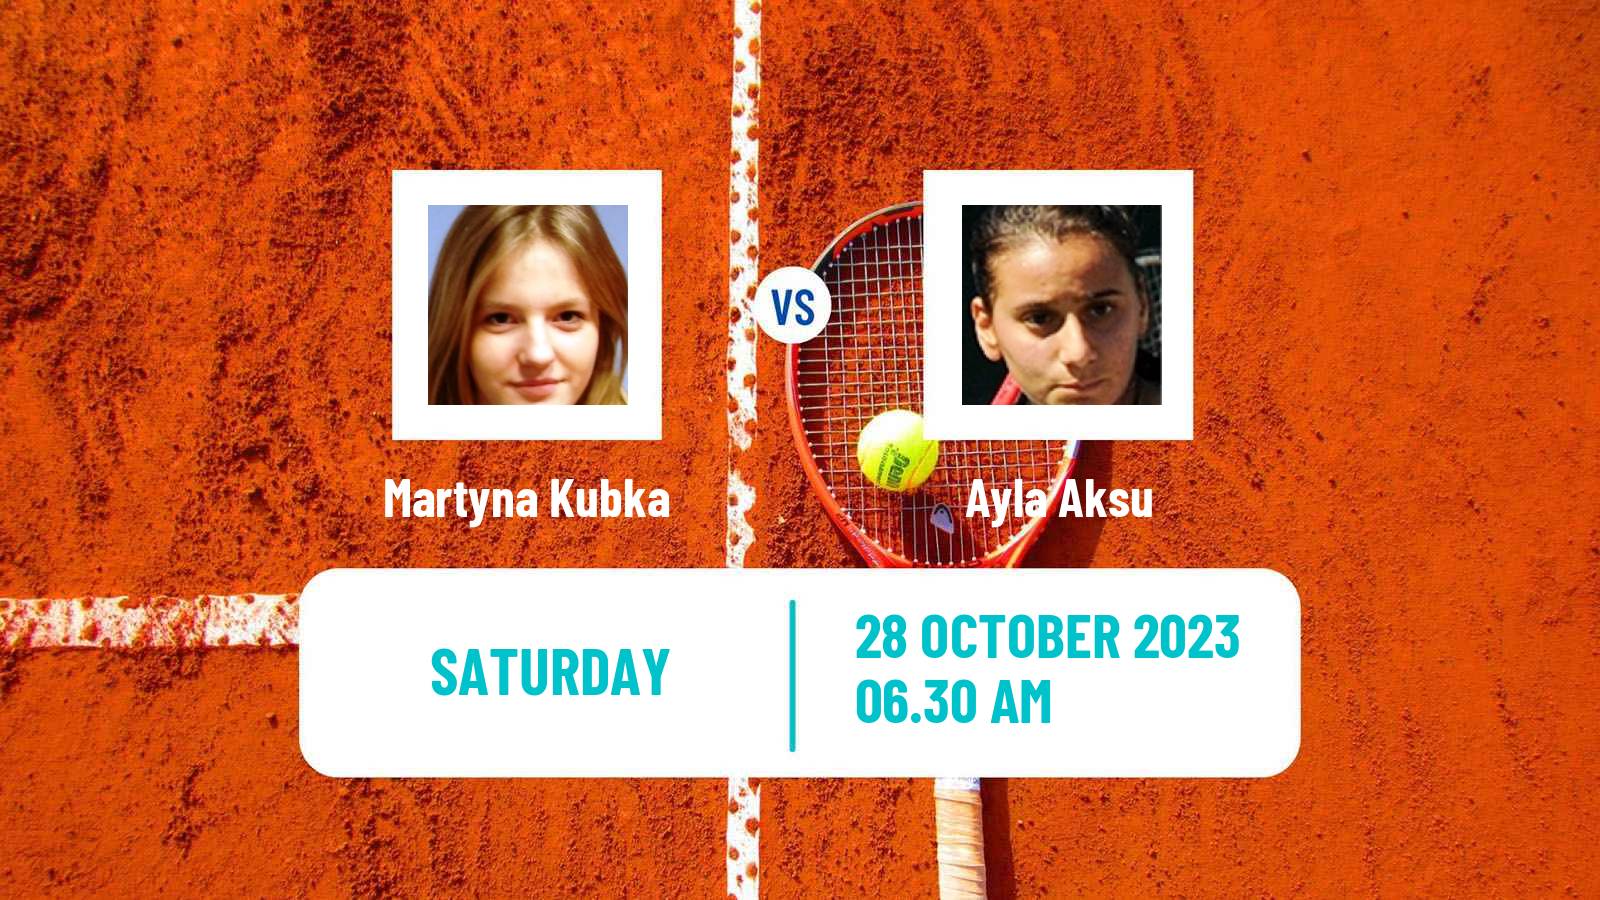 Tennis ITF W25 Istanbul Women Martyna Kubka - Ayla Aksu